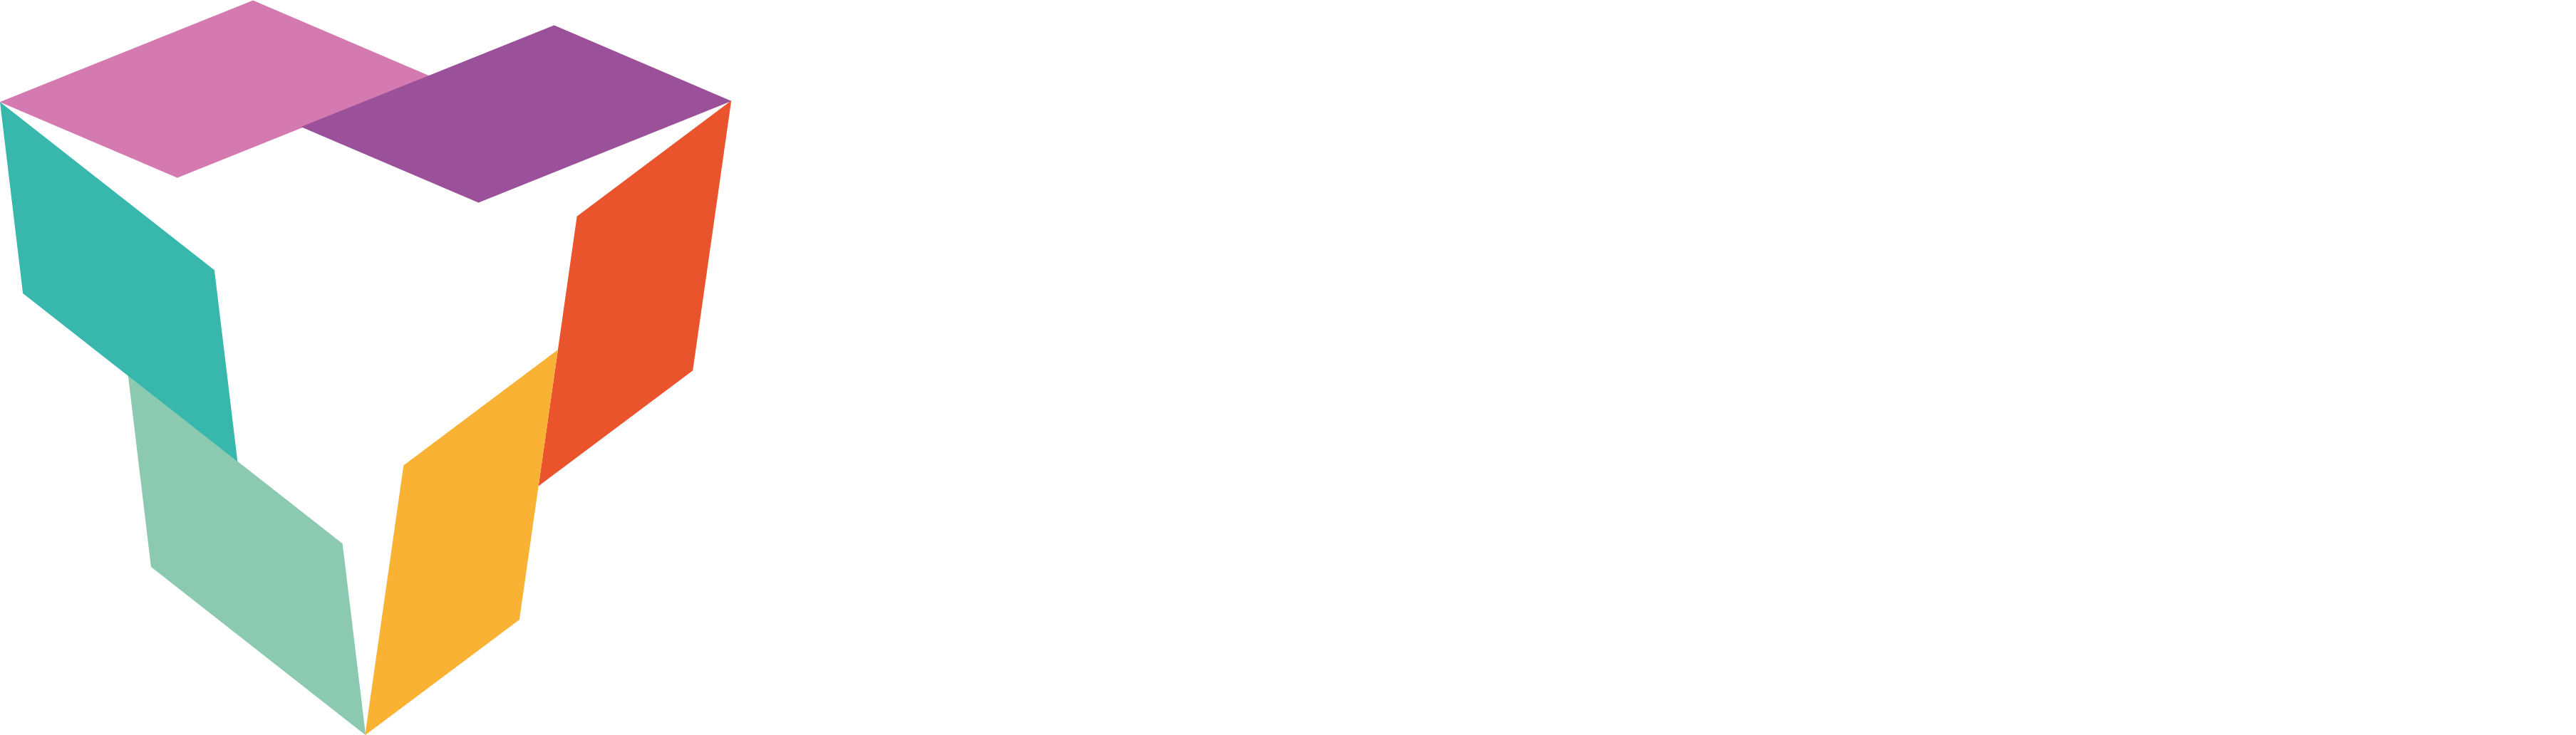 MoRobo Logo